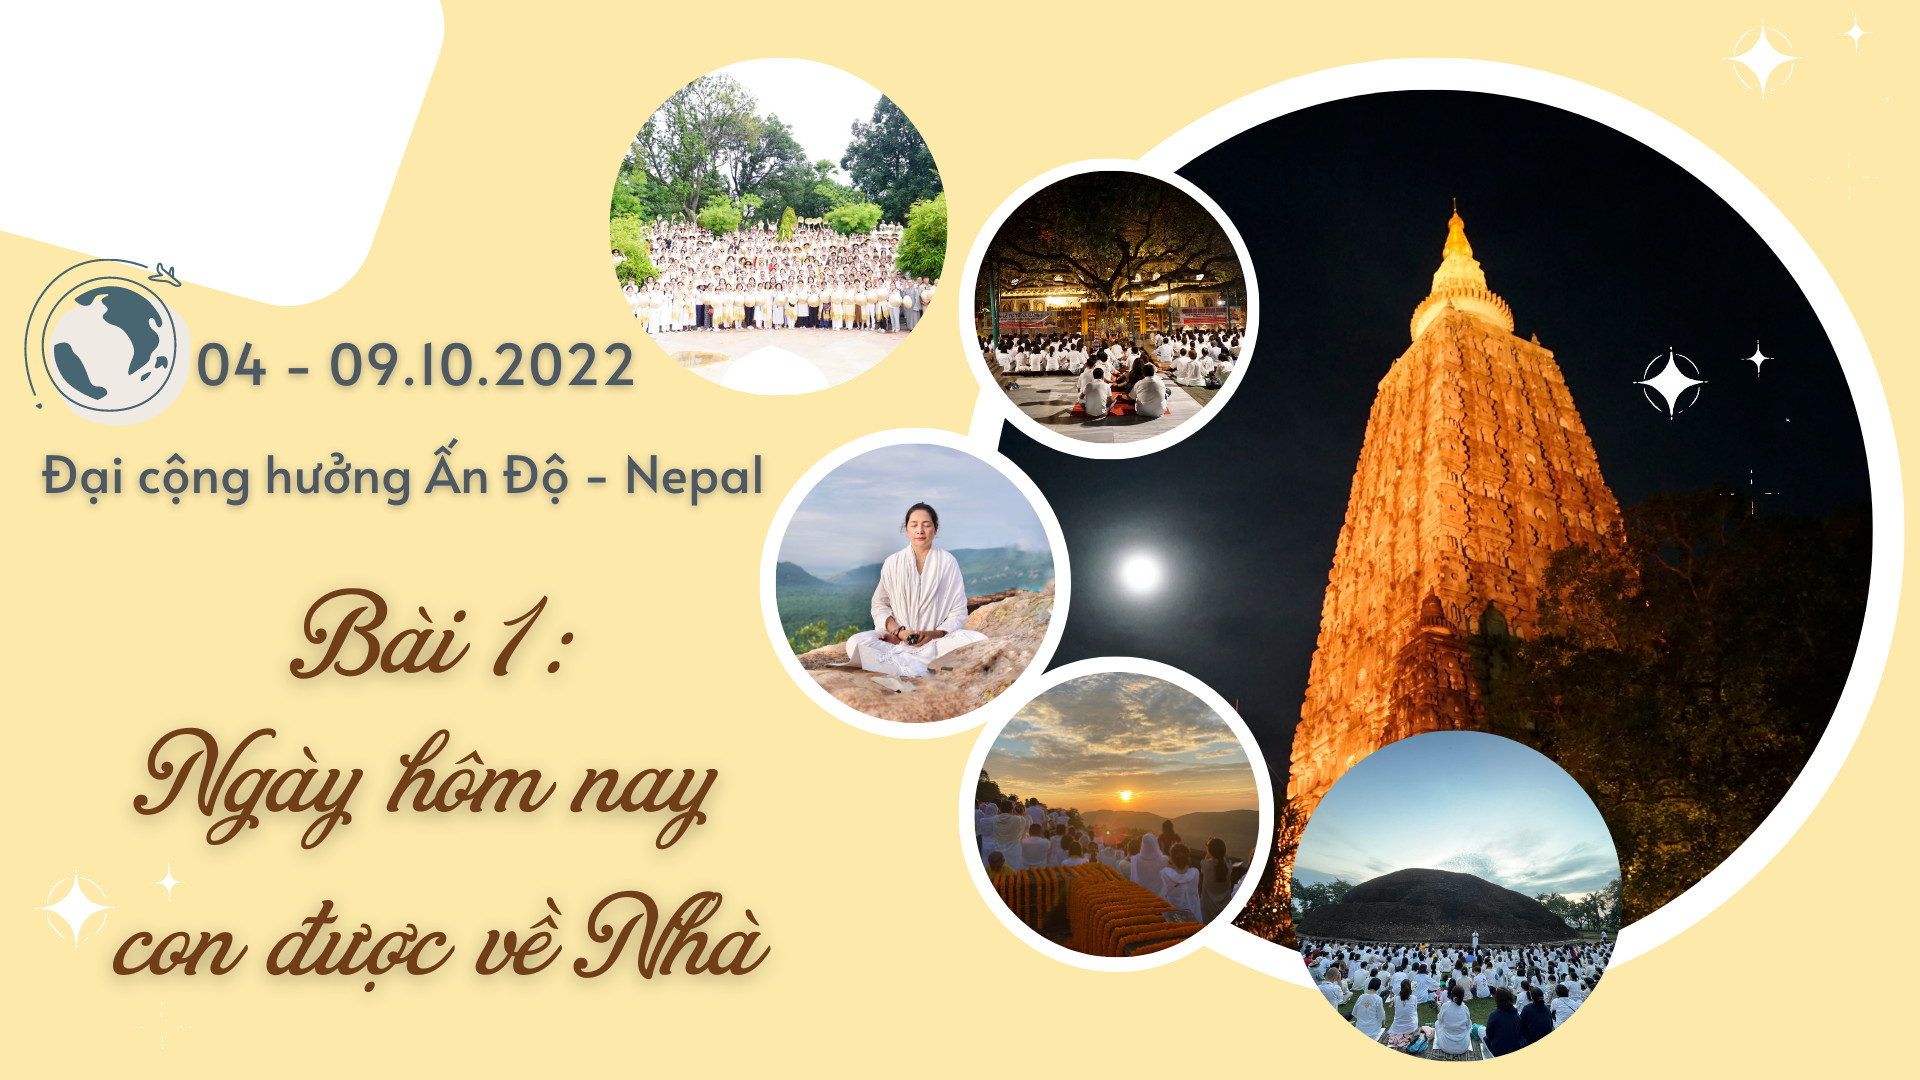 ĐẠI CỘNG HƯỞNG ẤN ĐỘ-NEPAL 2022 – BÀI 1: NGÀY HÔM NAY, CHÚNG CON ĐƯỢC TRỞ VỀ NHÀ…